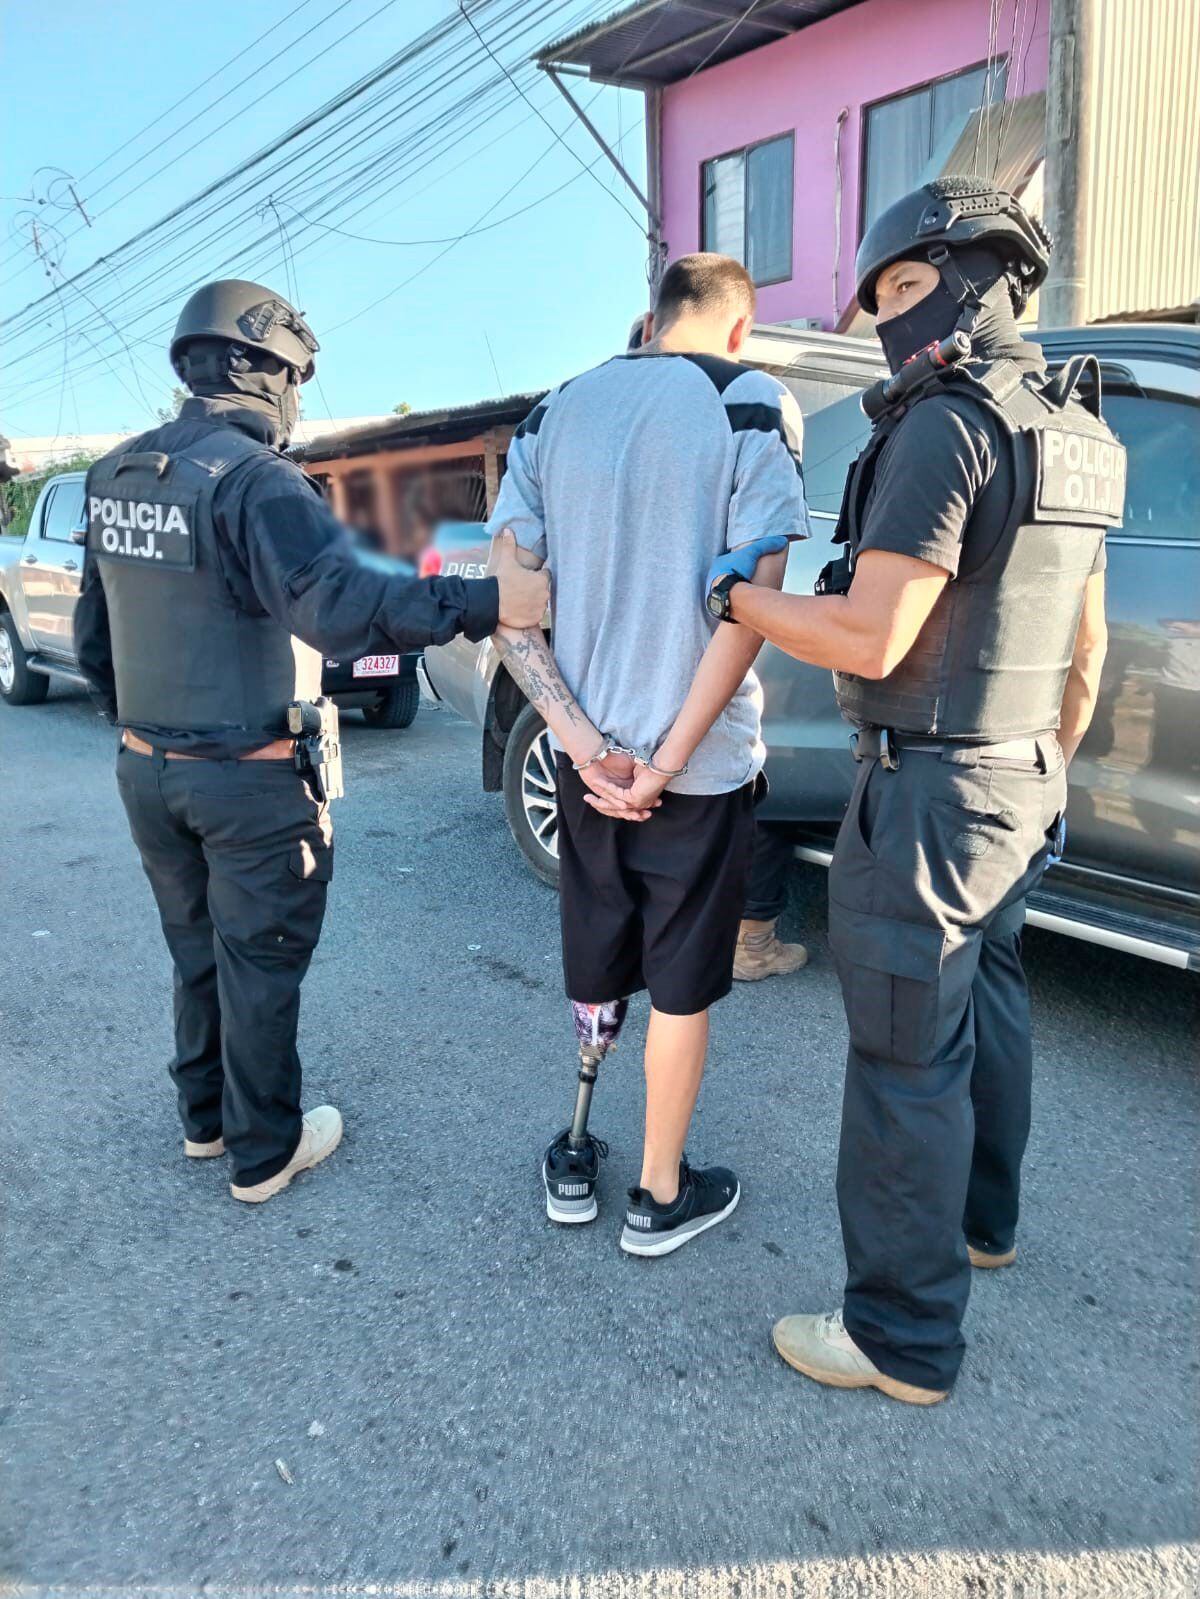 Sospechosos de amenazas agravadas y portación de arma son detenidos en Puntarenas 